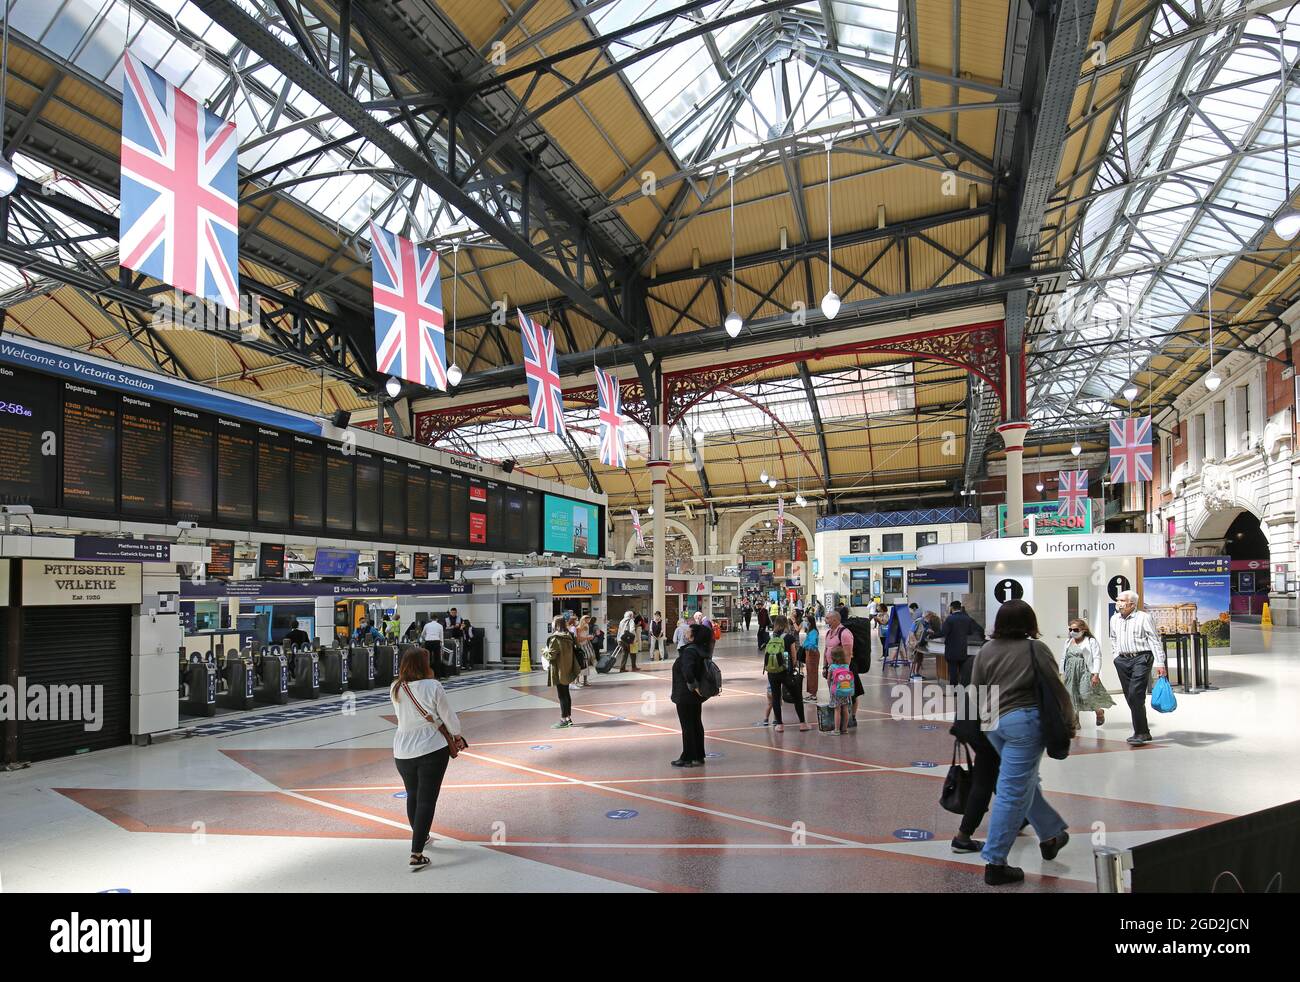 Die Hauptbahnhofstation in Londons Victoria Station. Zeigt die Abflugtafel, die Ticketbarrieren und das viktorianische Gewölbedach. Stockfoto